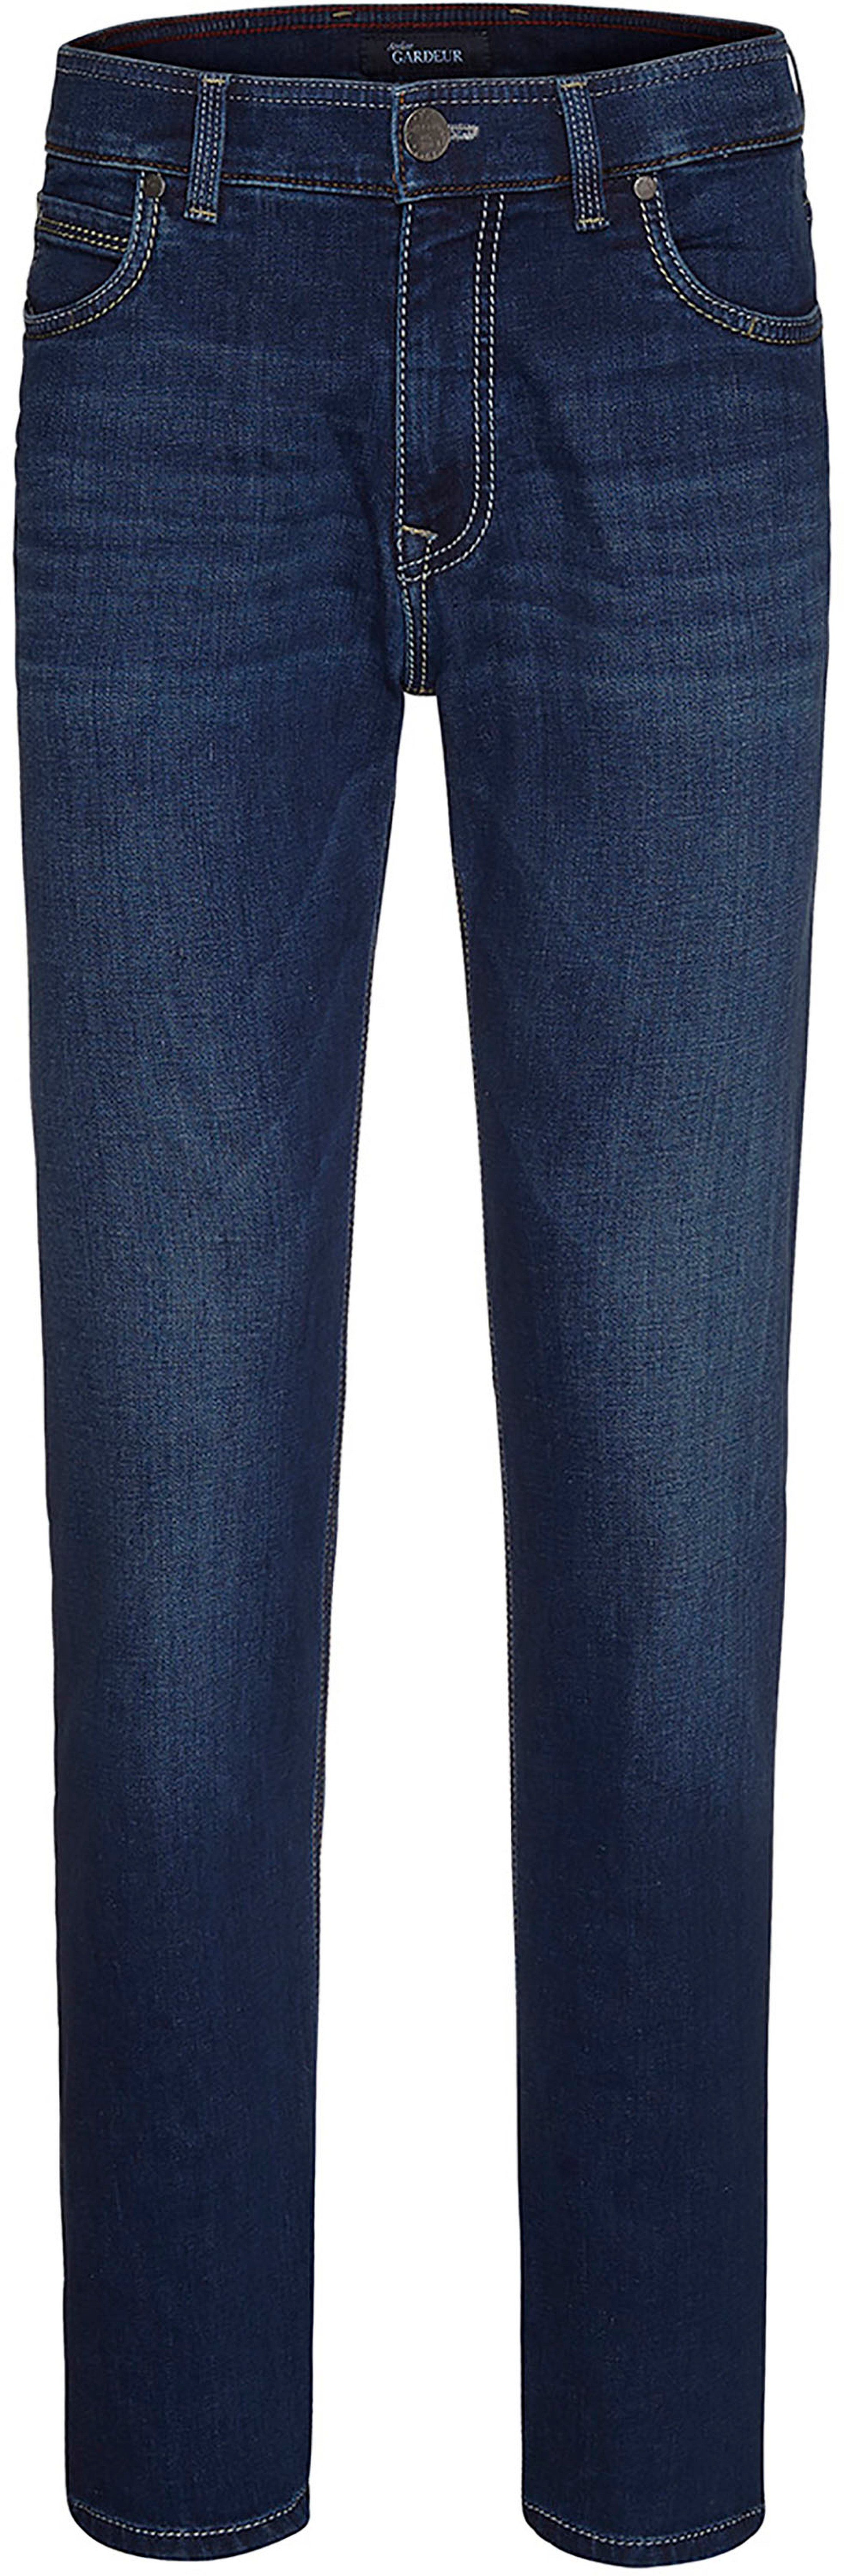 Gardeur Pantalon Batu Marine Bleu Bleu foncé taille W 31